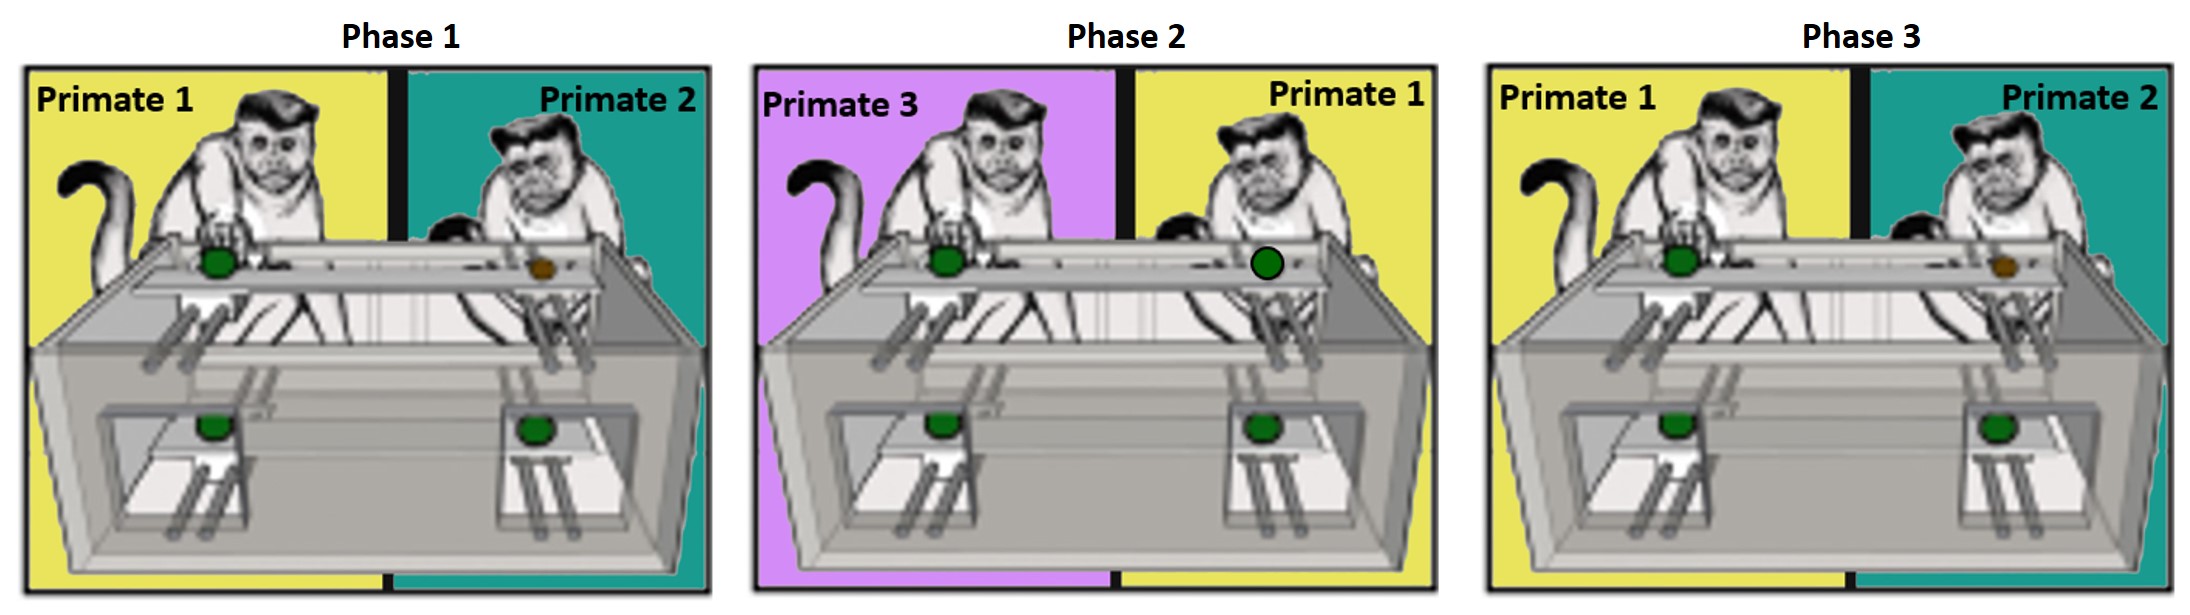 3 phases of prosocial test